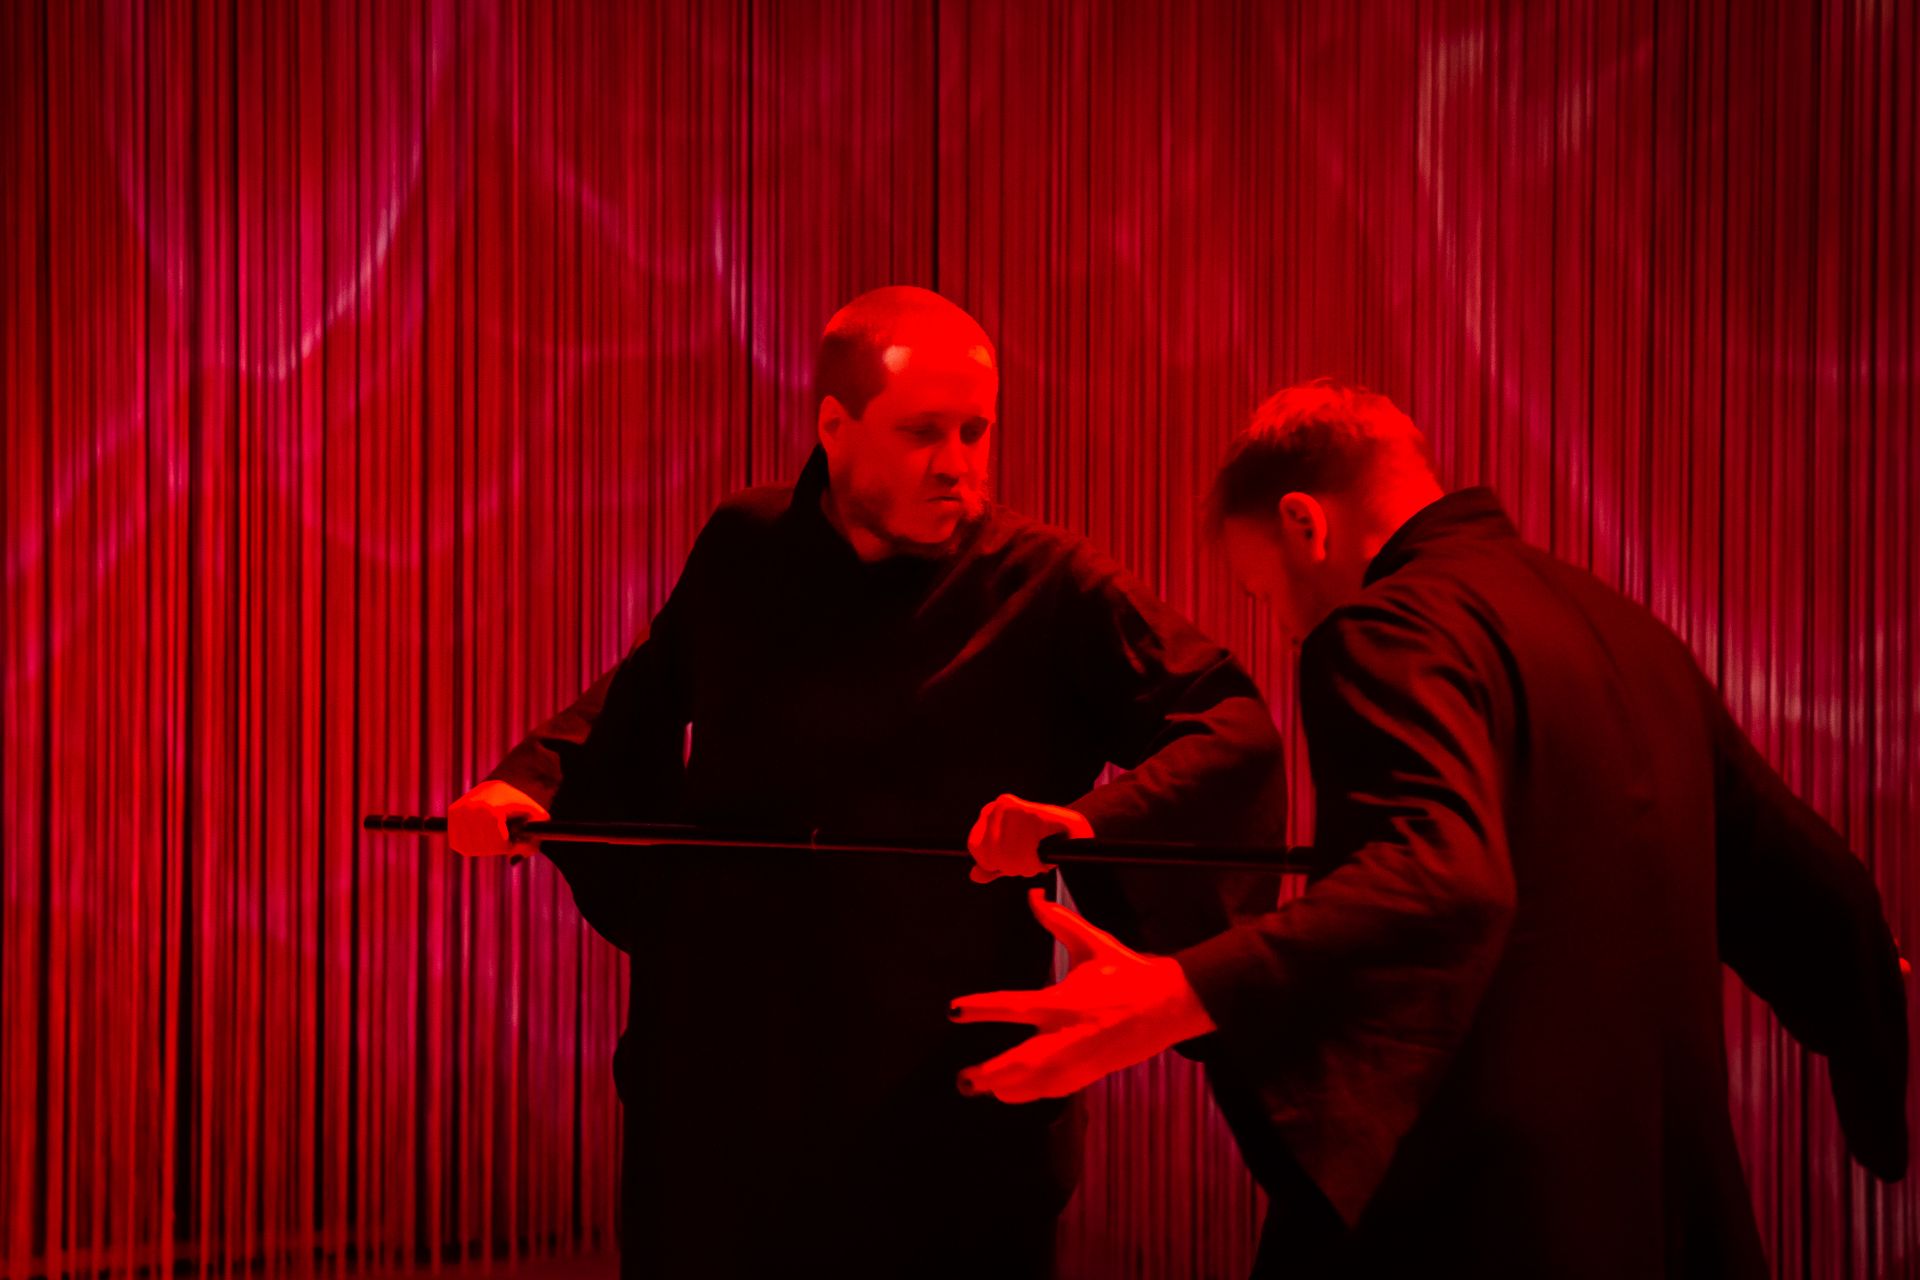 Föreställningsbild där dansare Emil sticker en käpp mot dansare Eero. Båda dansarna är svartklädda och scenen är inbäddad i ett dramatiskt mörkrött ljus.